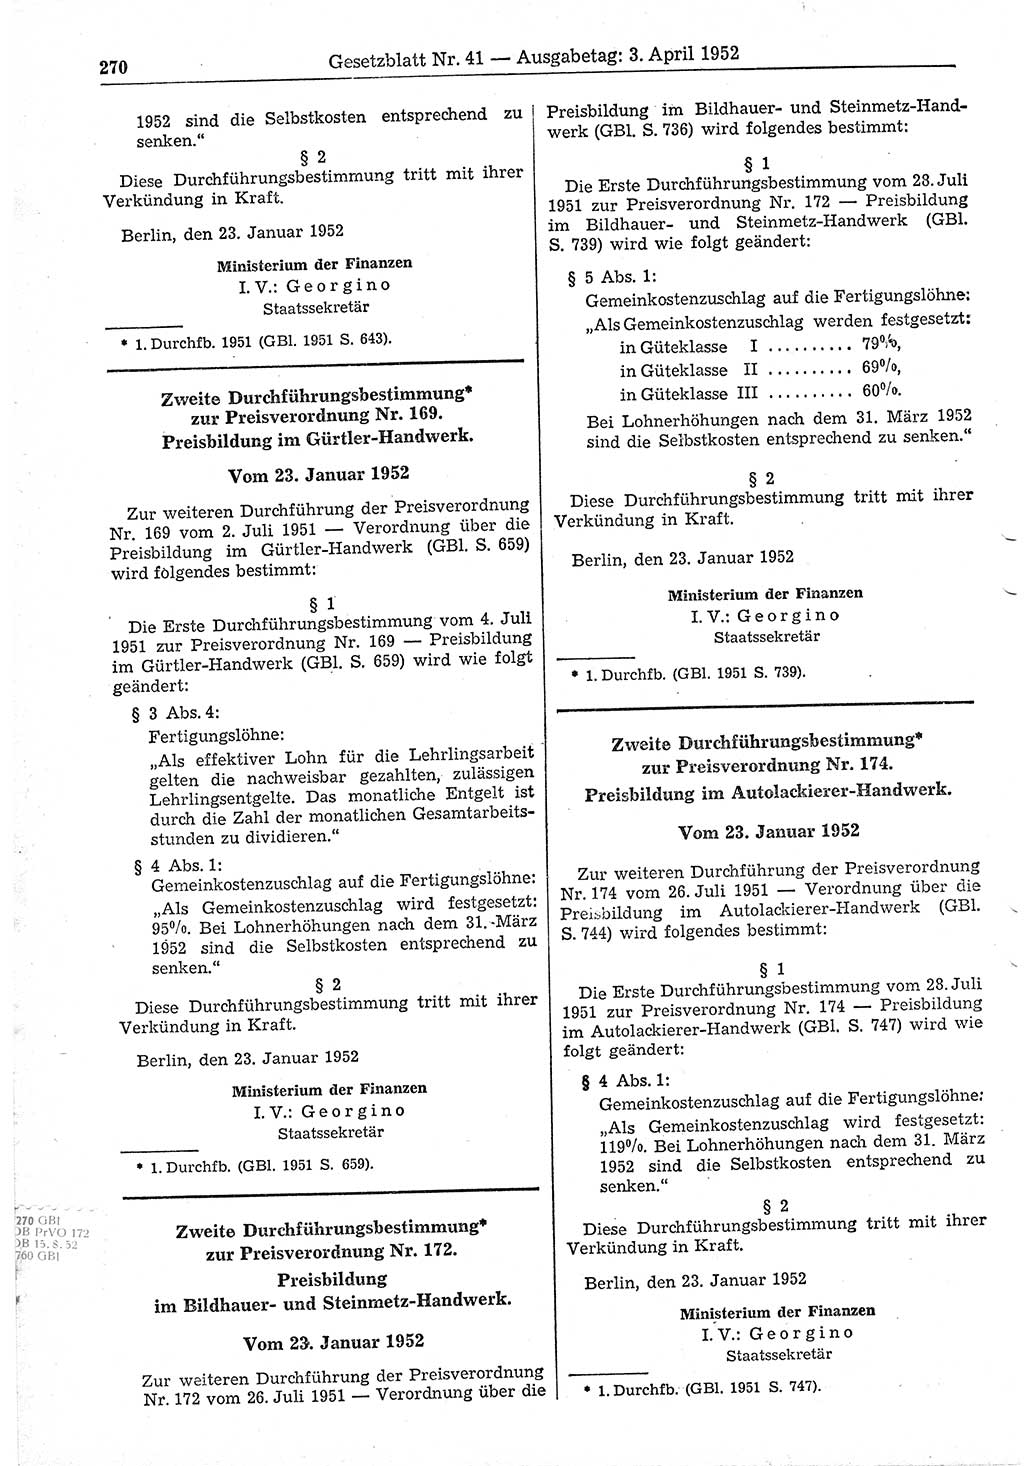 Gesetzblatt (GBl.) der Deutschen Demokratischen Republik (DDR) 1952, Seite 270 (GBl. DDR 1952, S. 270)